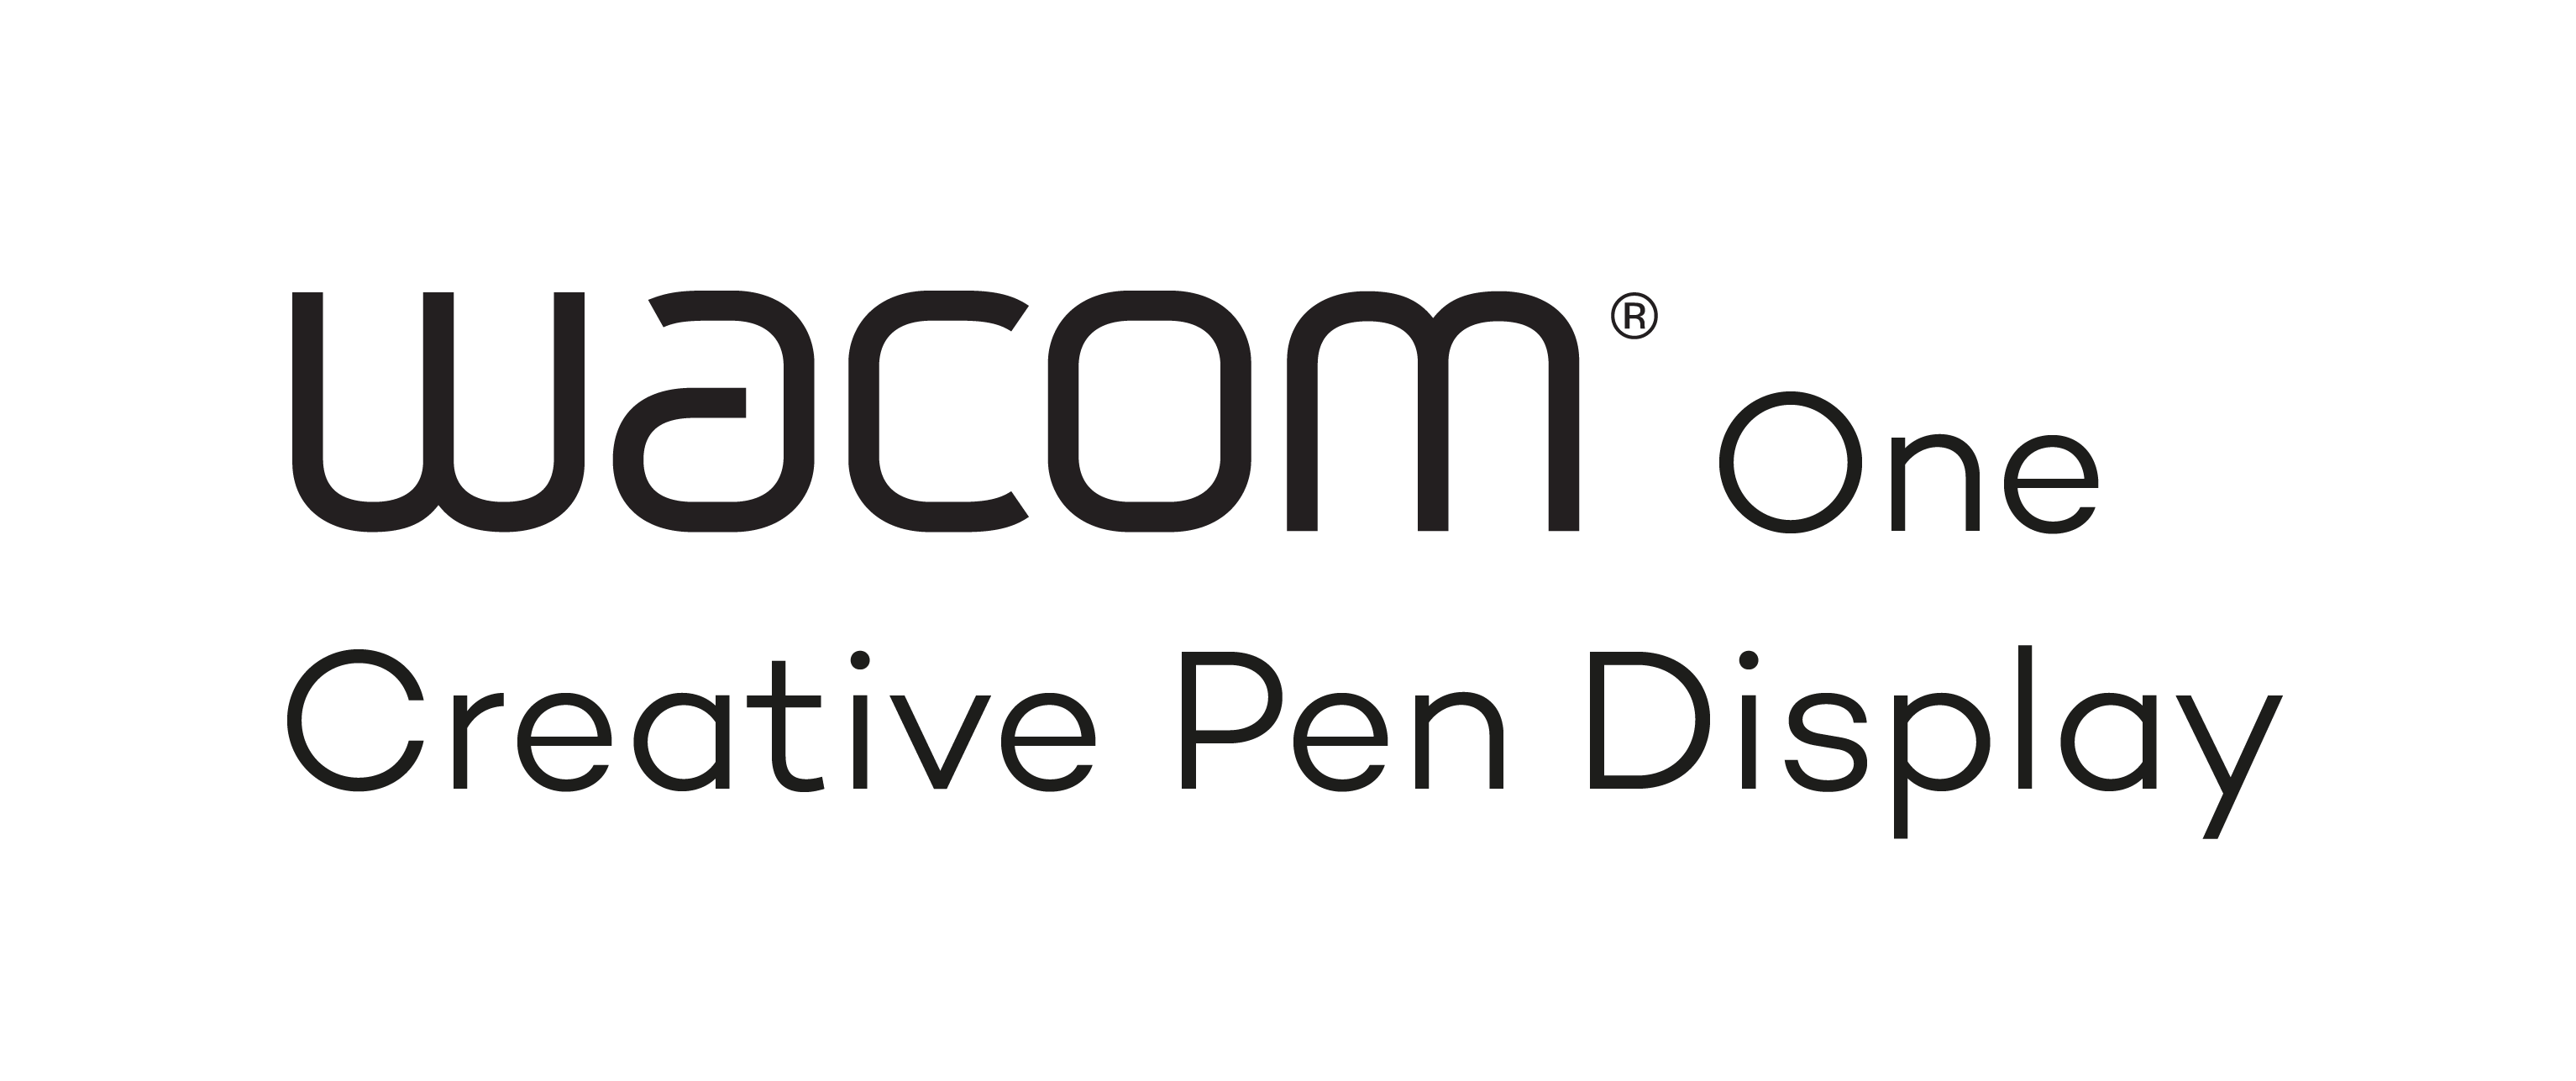 WACOM Logo One Creative Pen Display V K 1